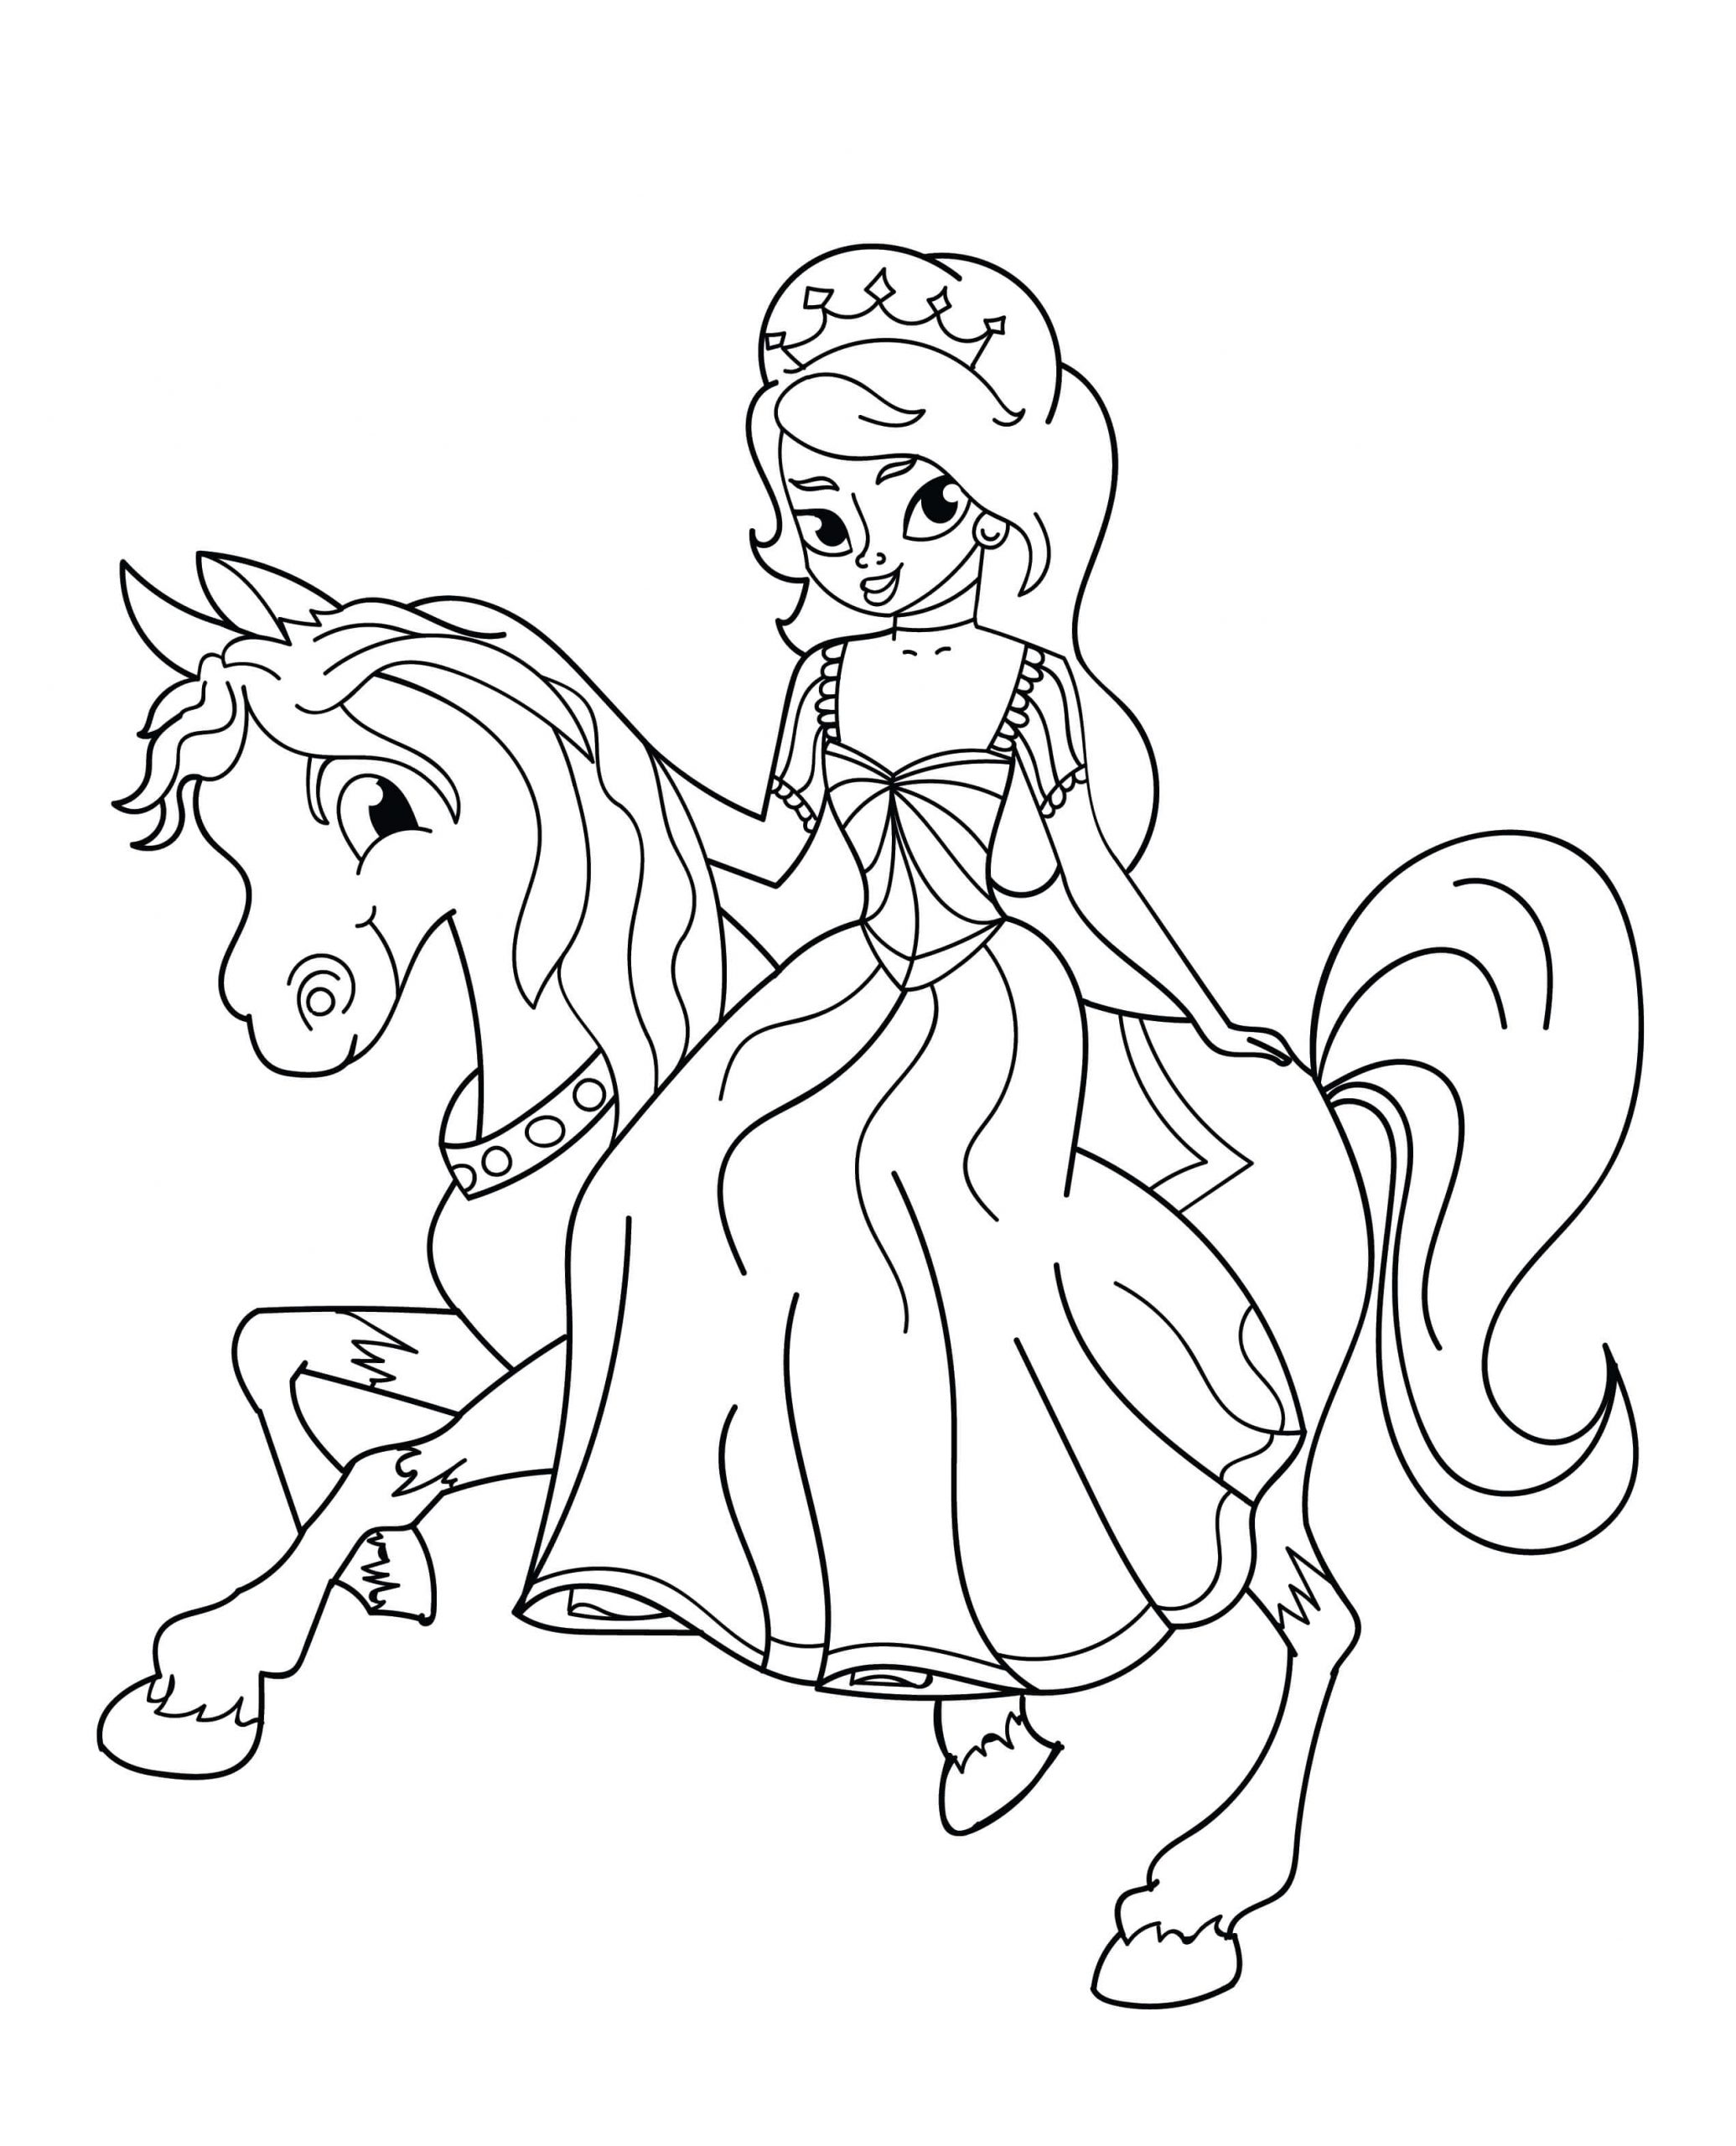 الأميرة الصغيرة تركب الحصان صورة تلوين